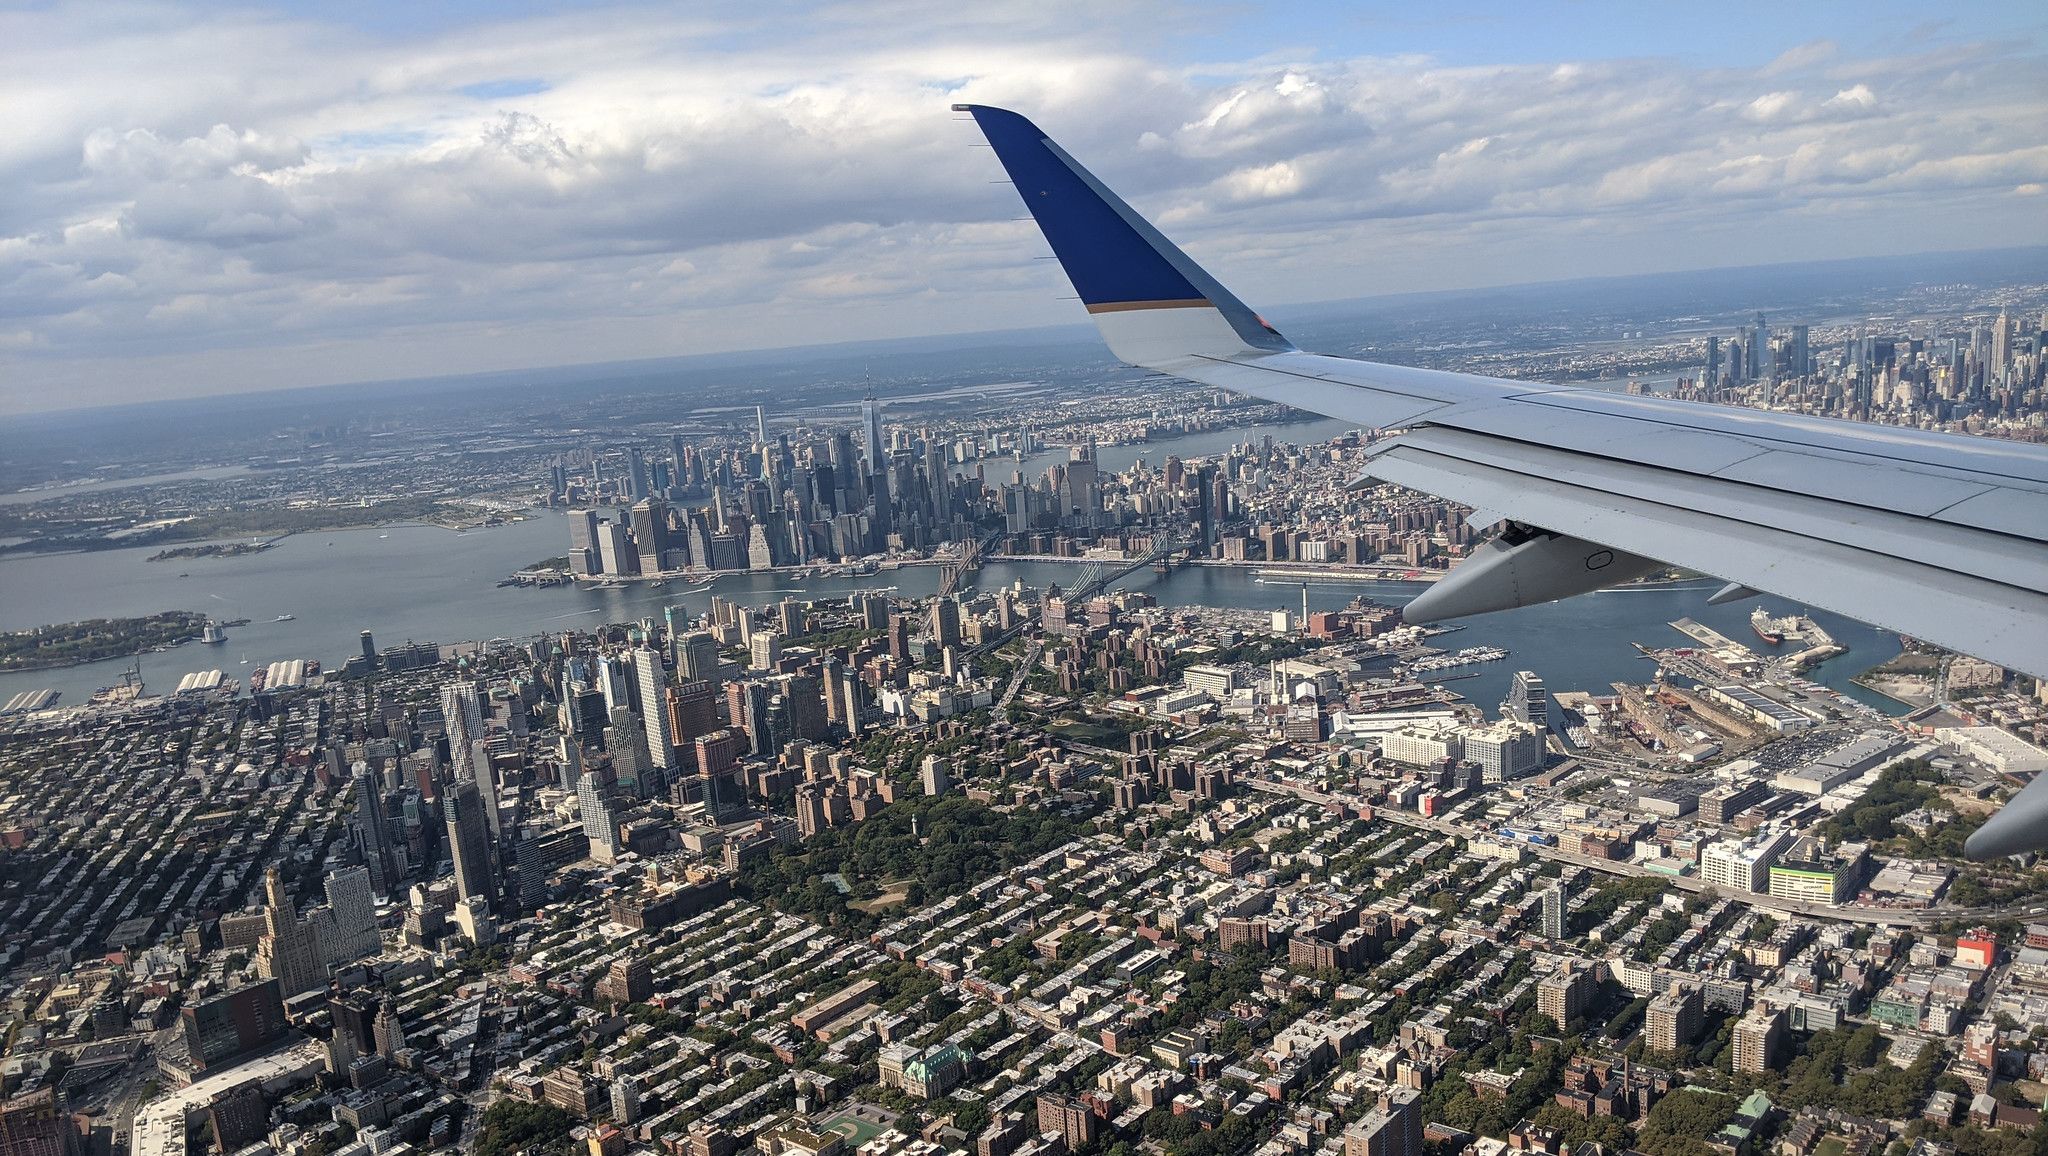 Vuelo de United Airlines sobre Nueva York, en una imagen de Janine and Jim Eden en Flickr.com